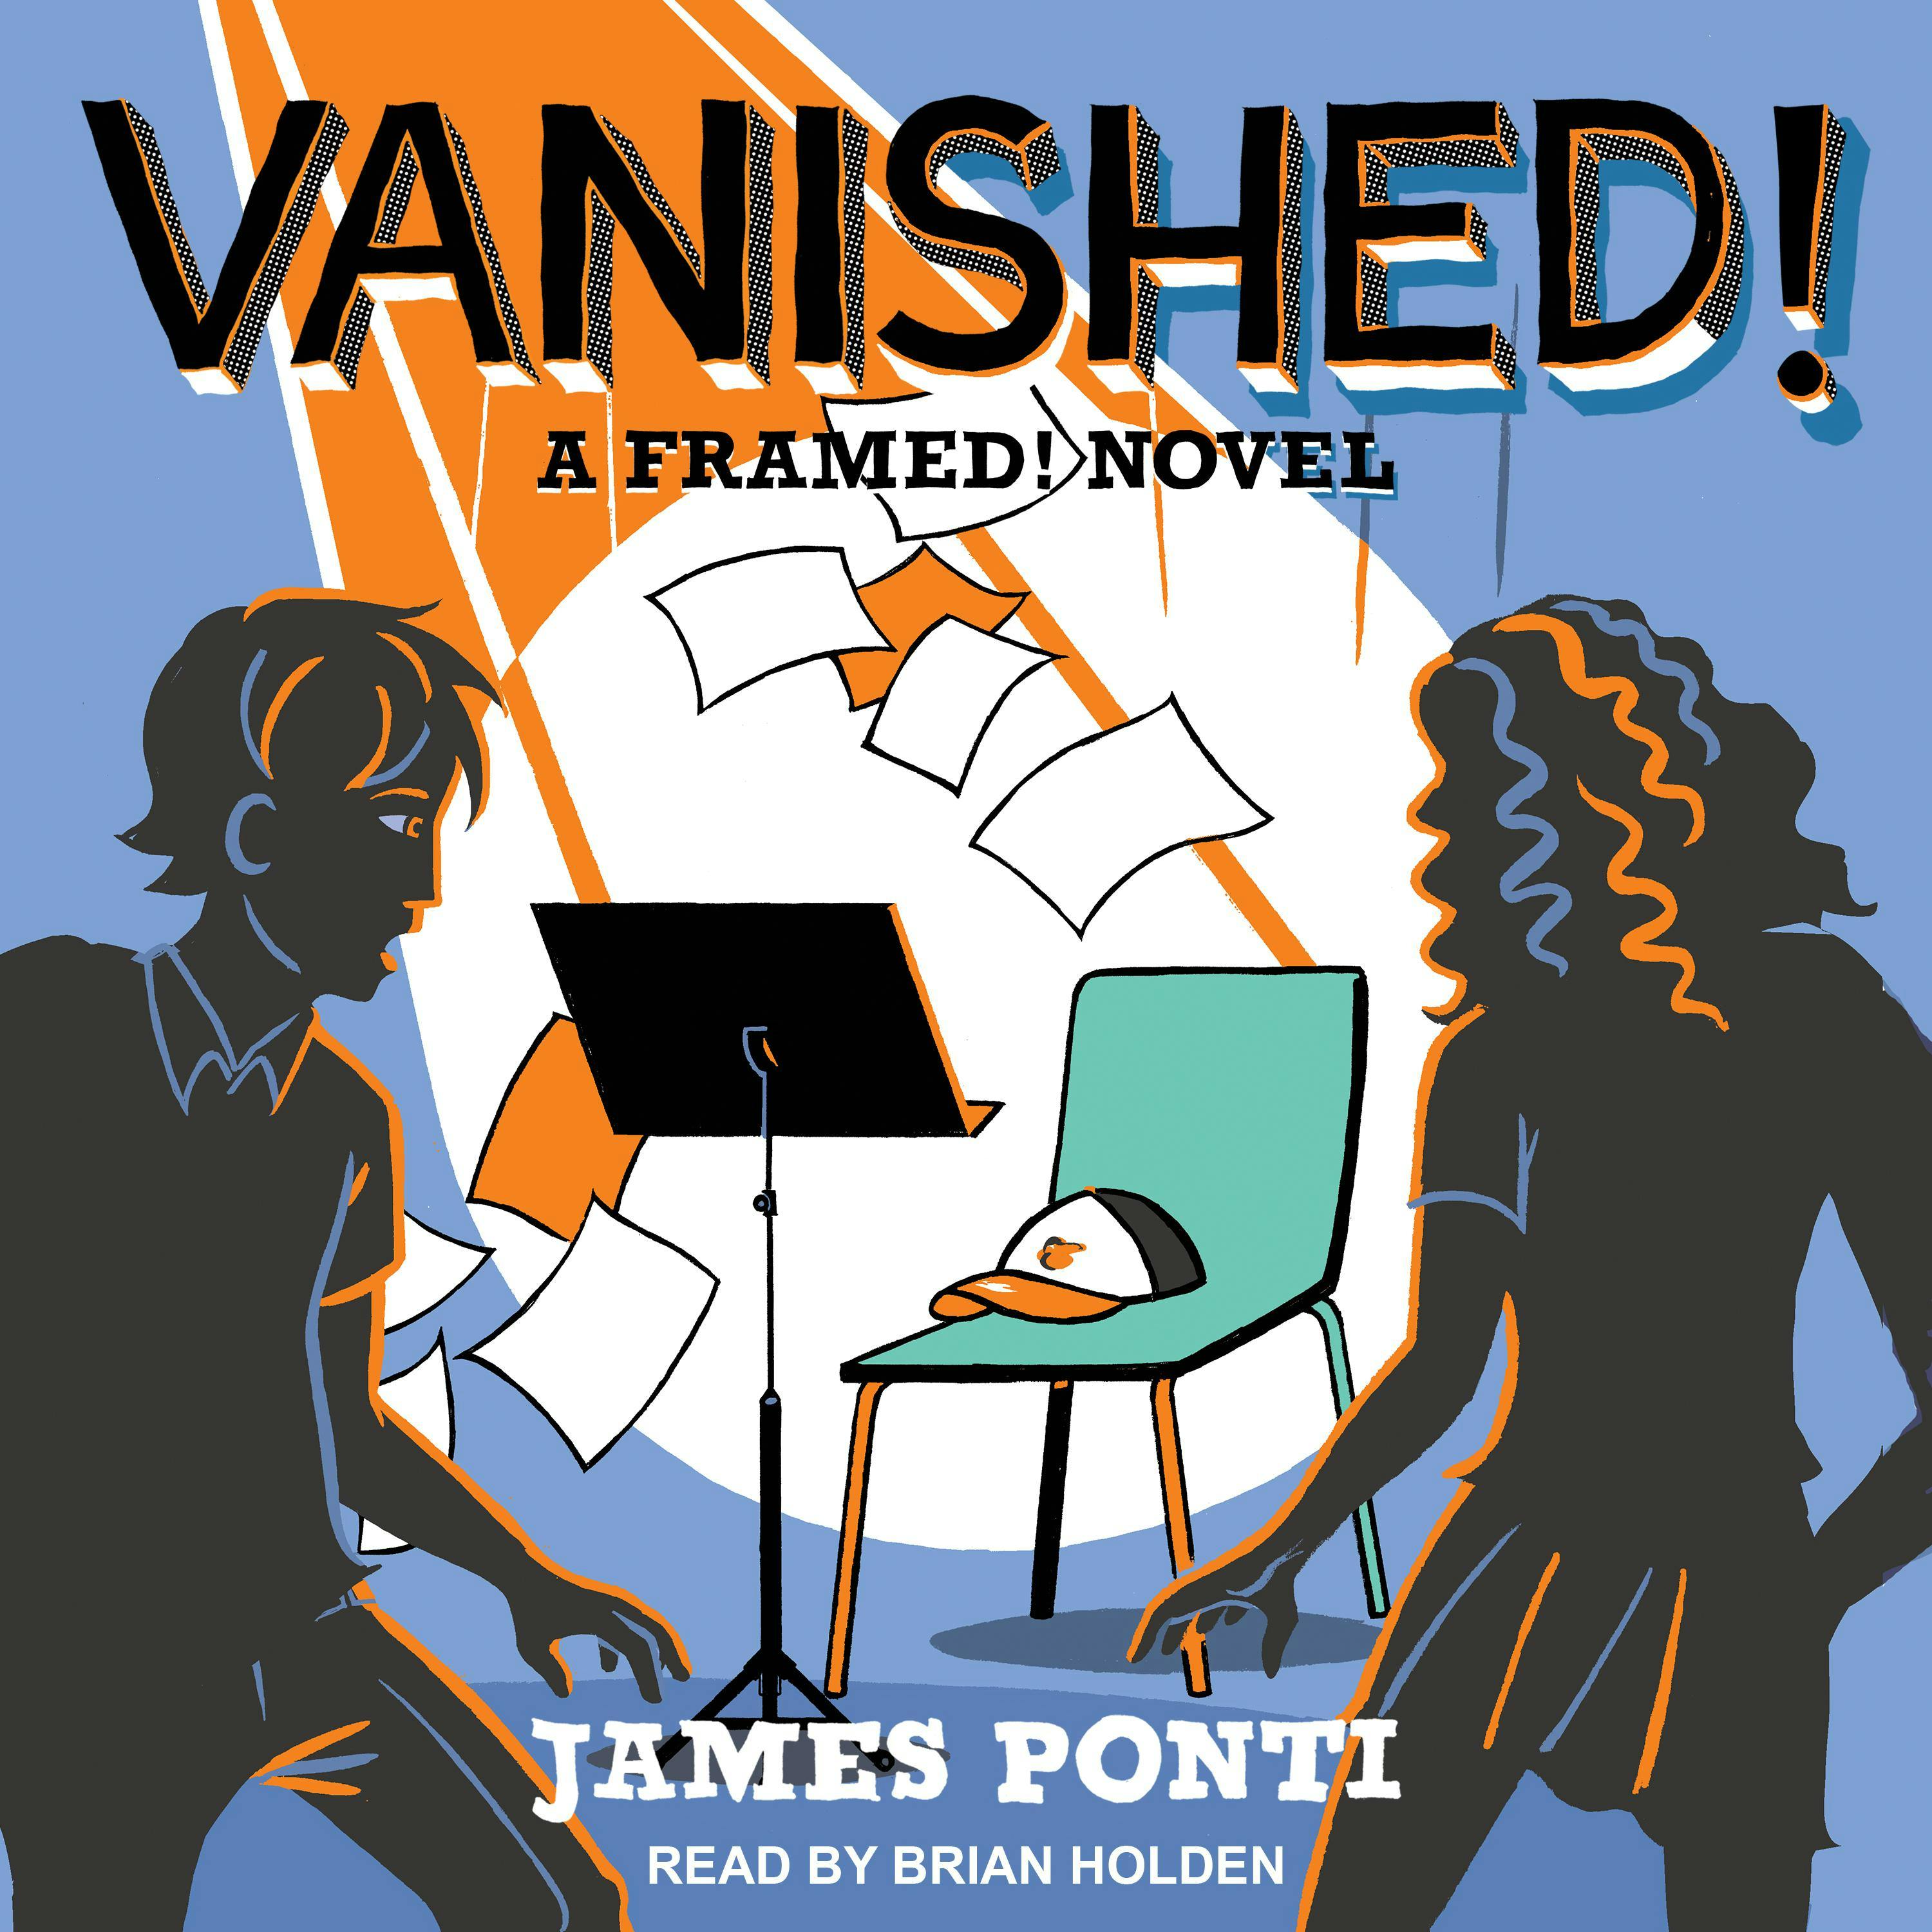 Vanished!: A Framed! Novel - James Ponti